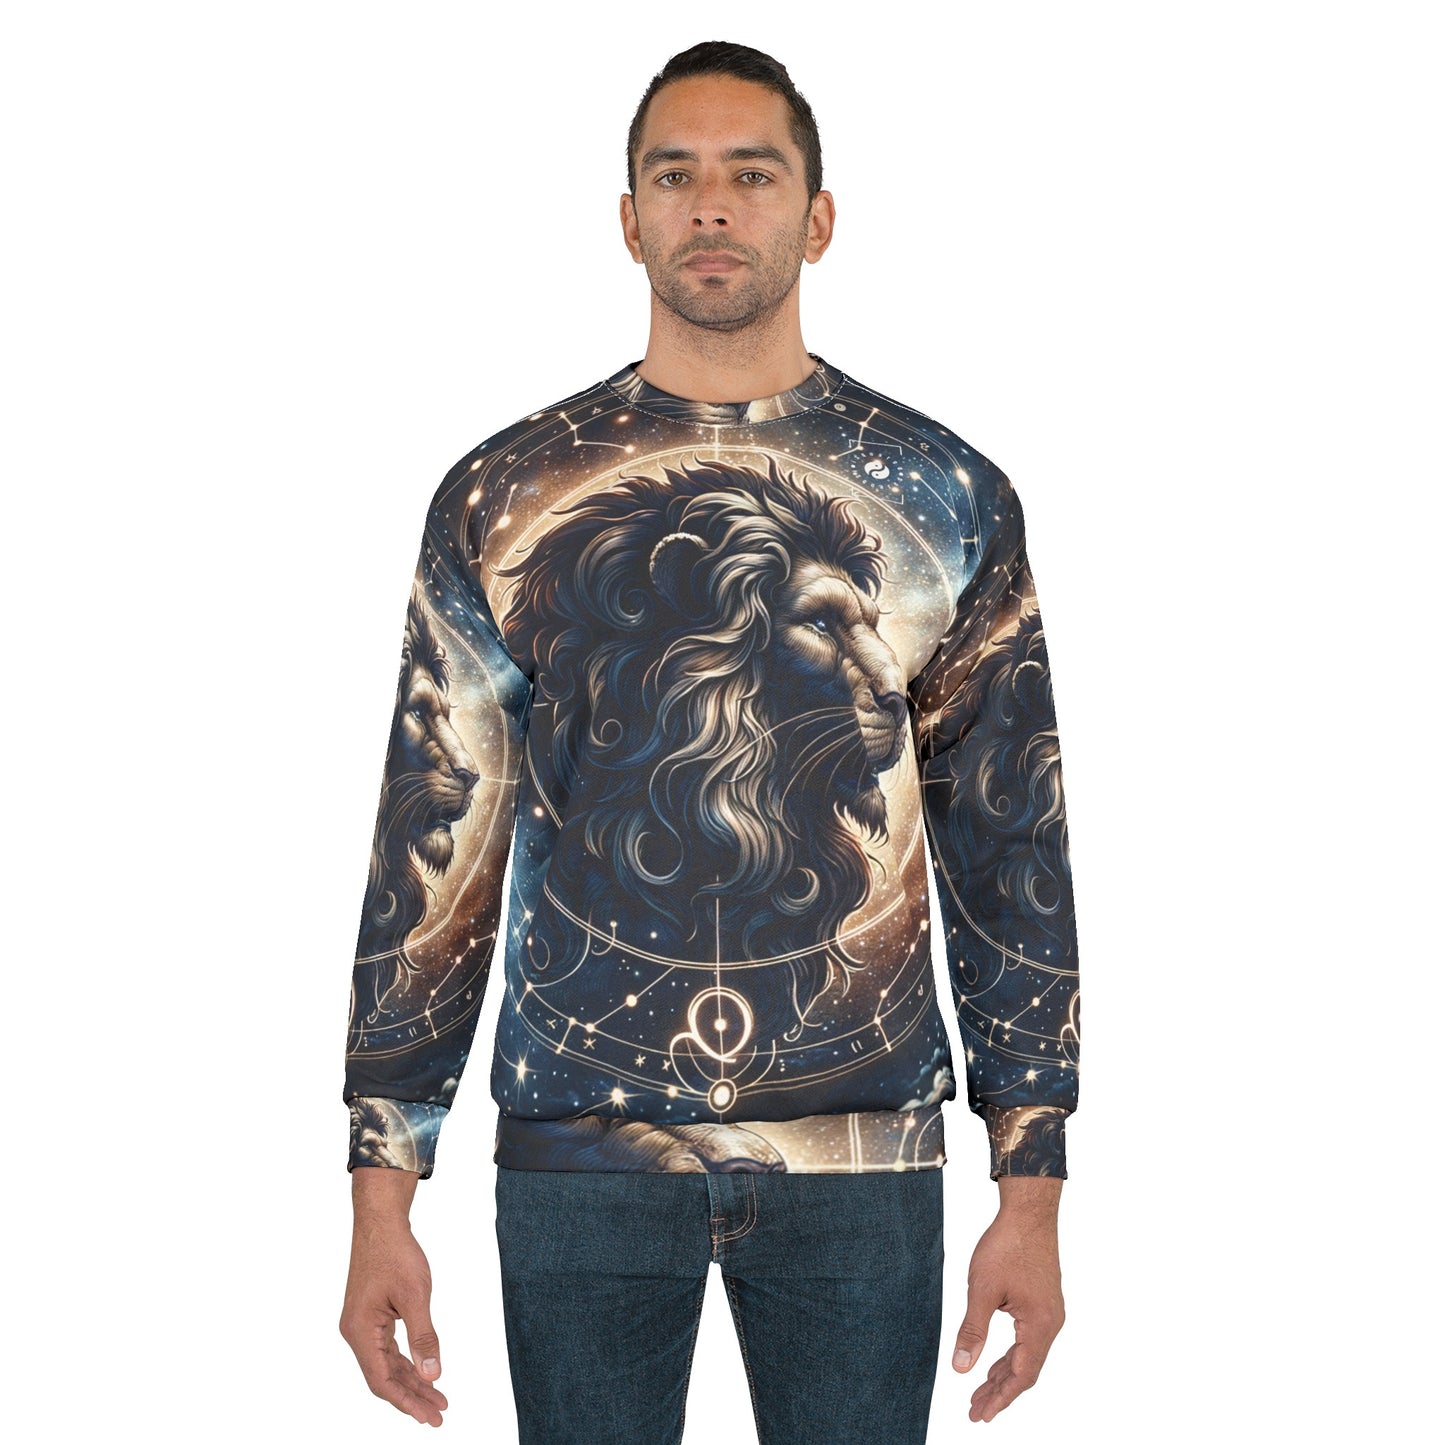 Celestial Leo Roar - Unisex Sweatshirt